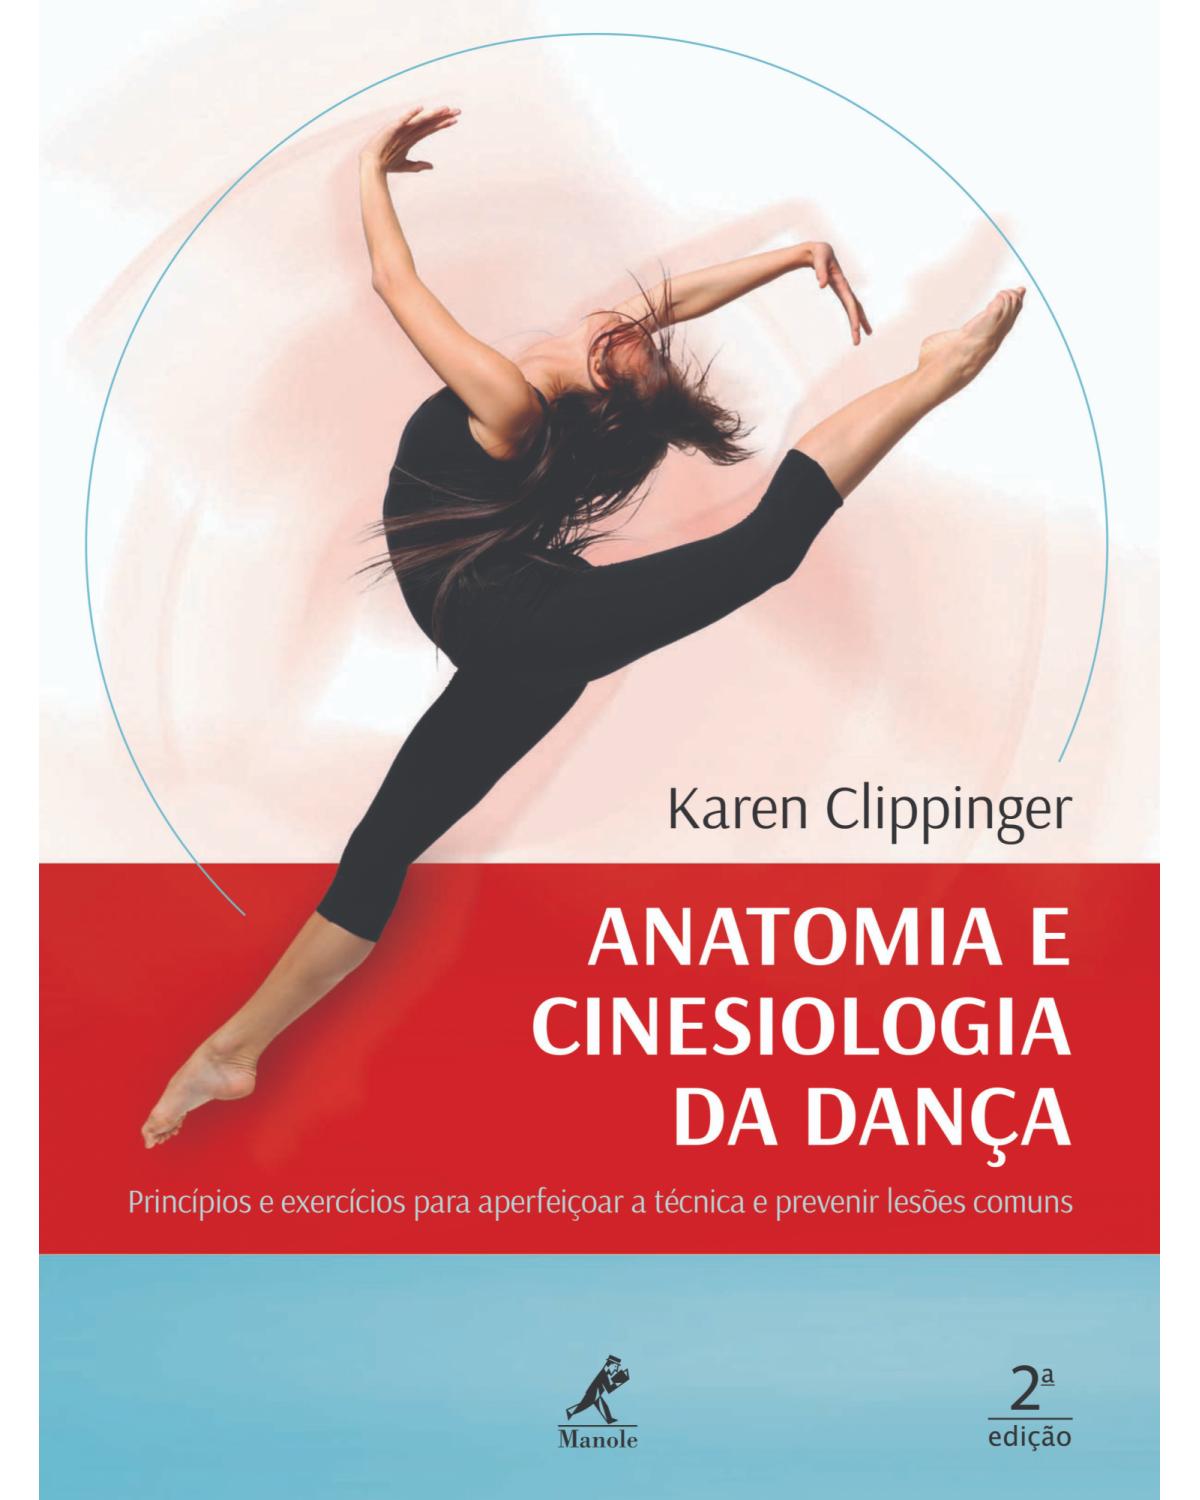 Anatomia e cinesiologia da dança - princípios e exercícios para aperfeiçoar a técnica e prevenir lesões comuns - 2ª Edição | 2019